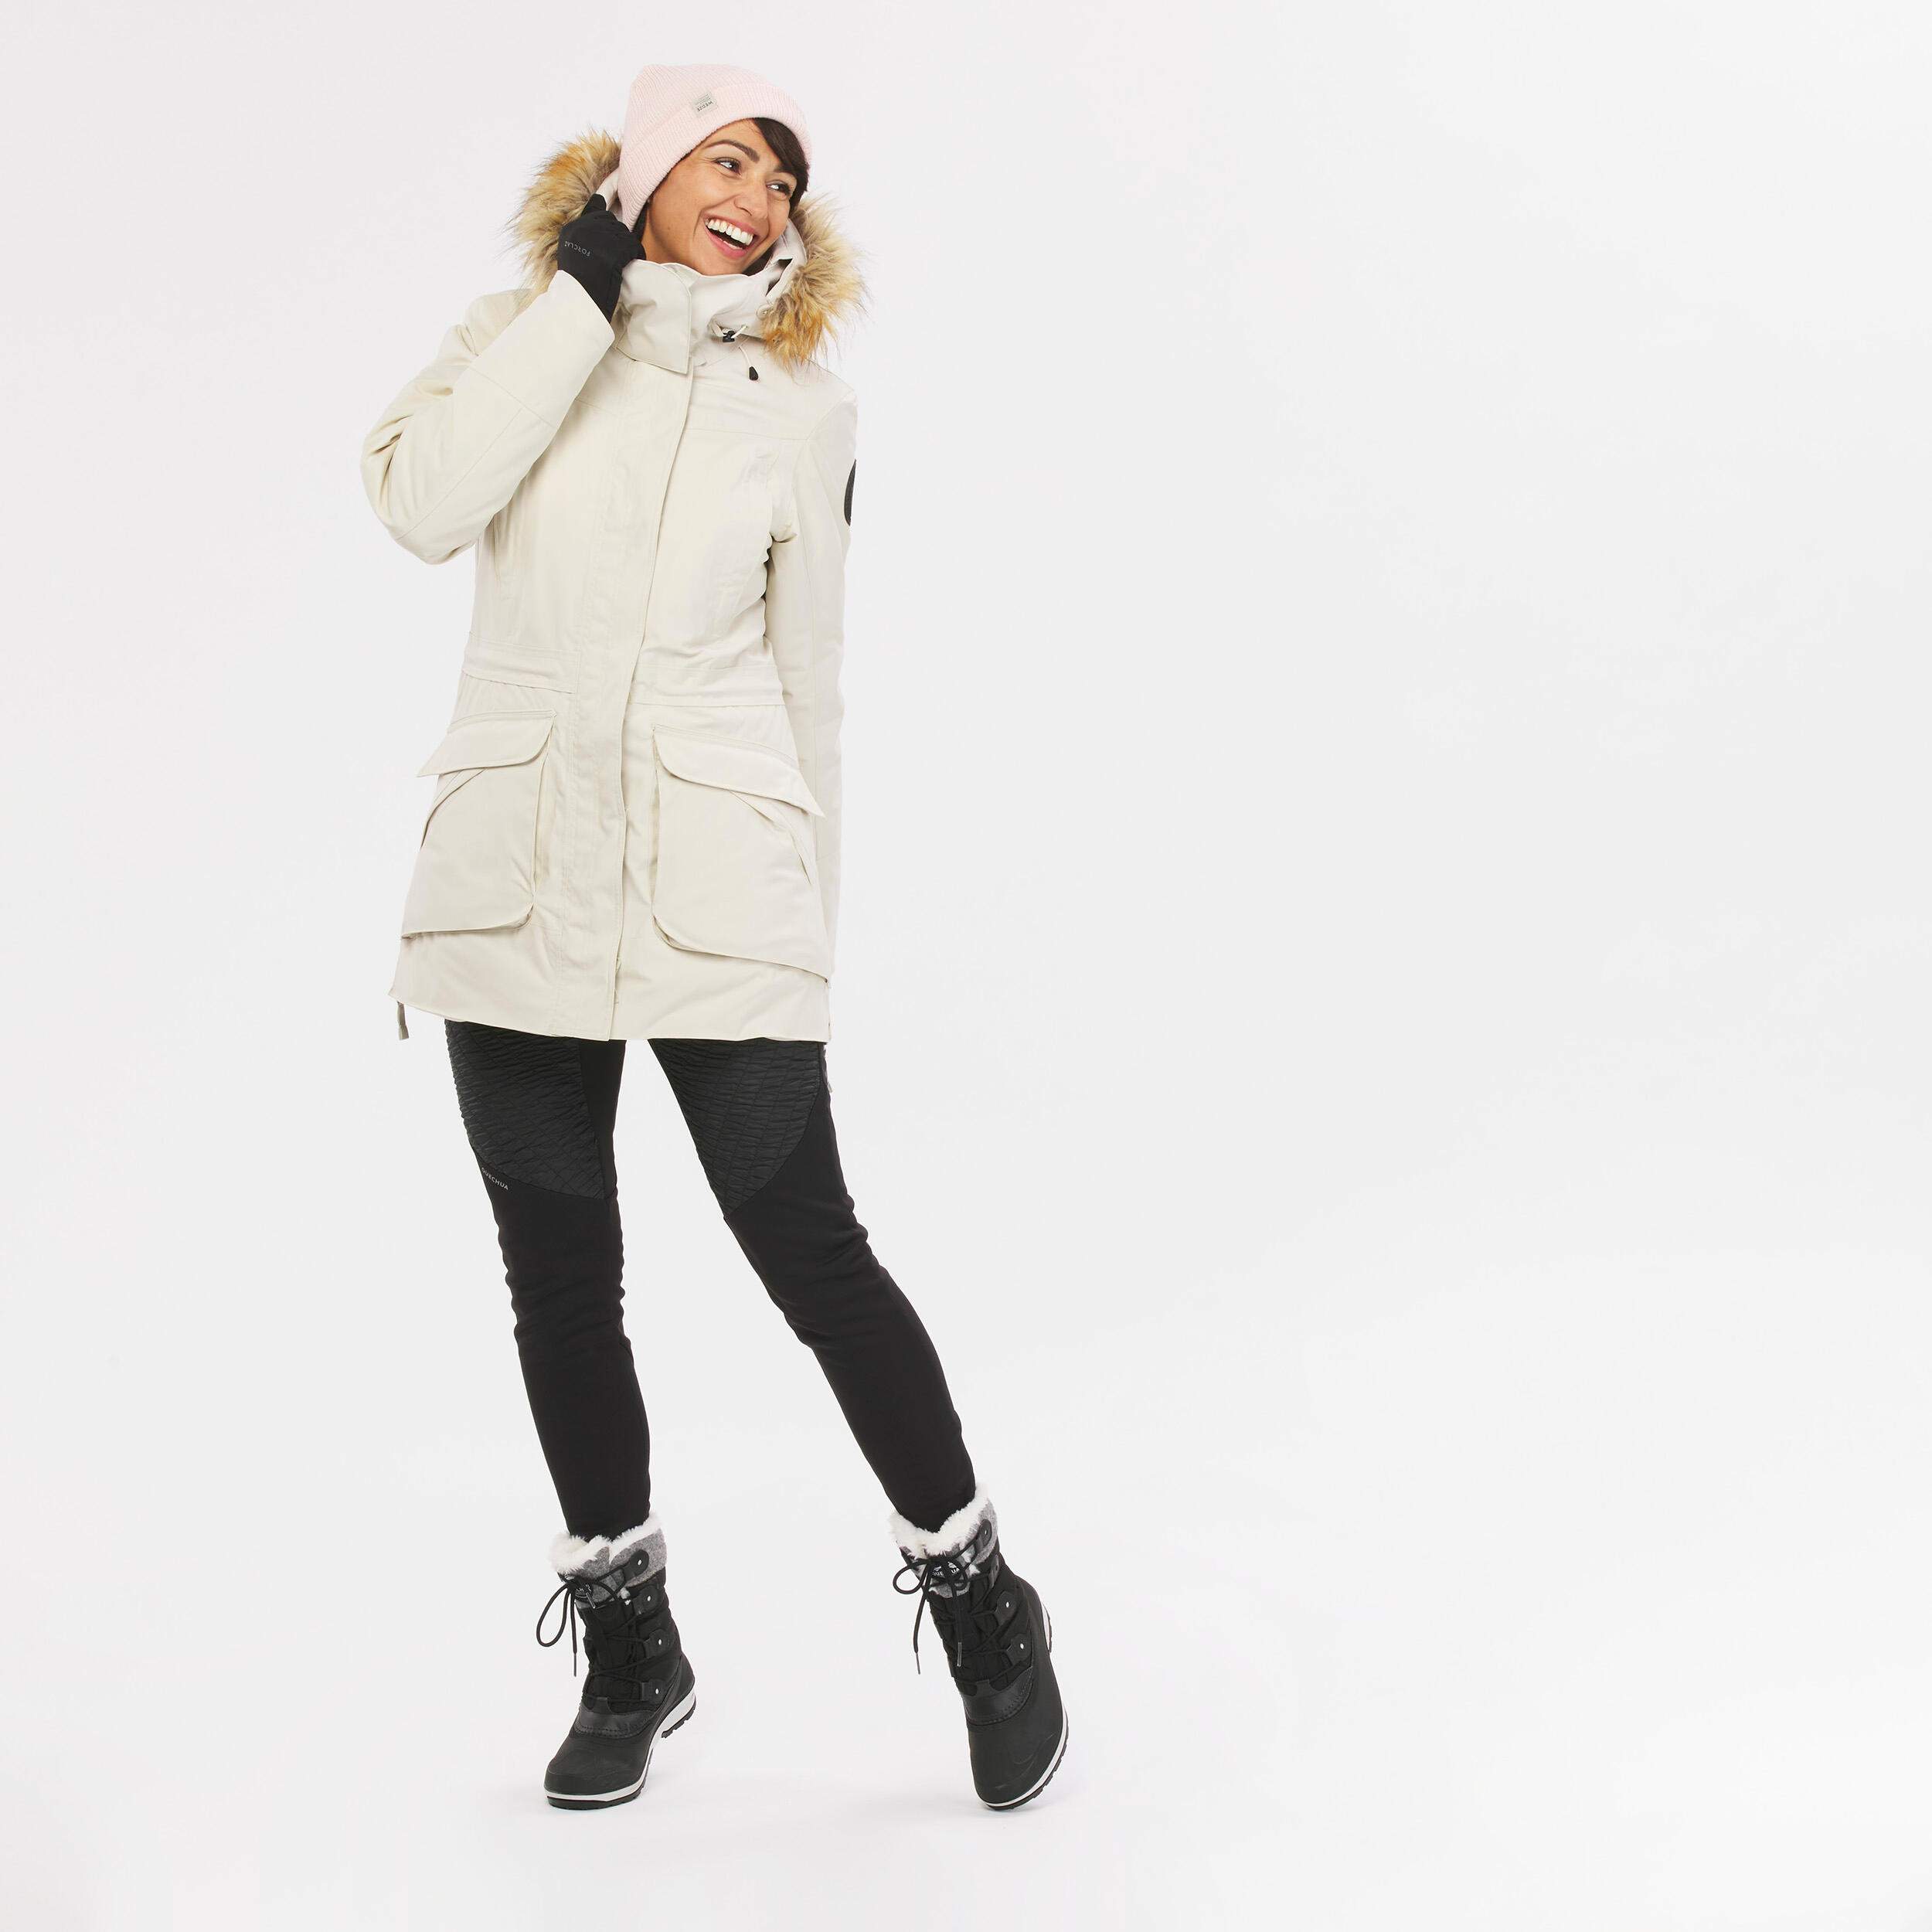 Women’s Winter Jacket - SH 900 - QUECHUA